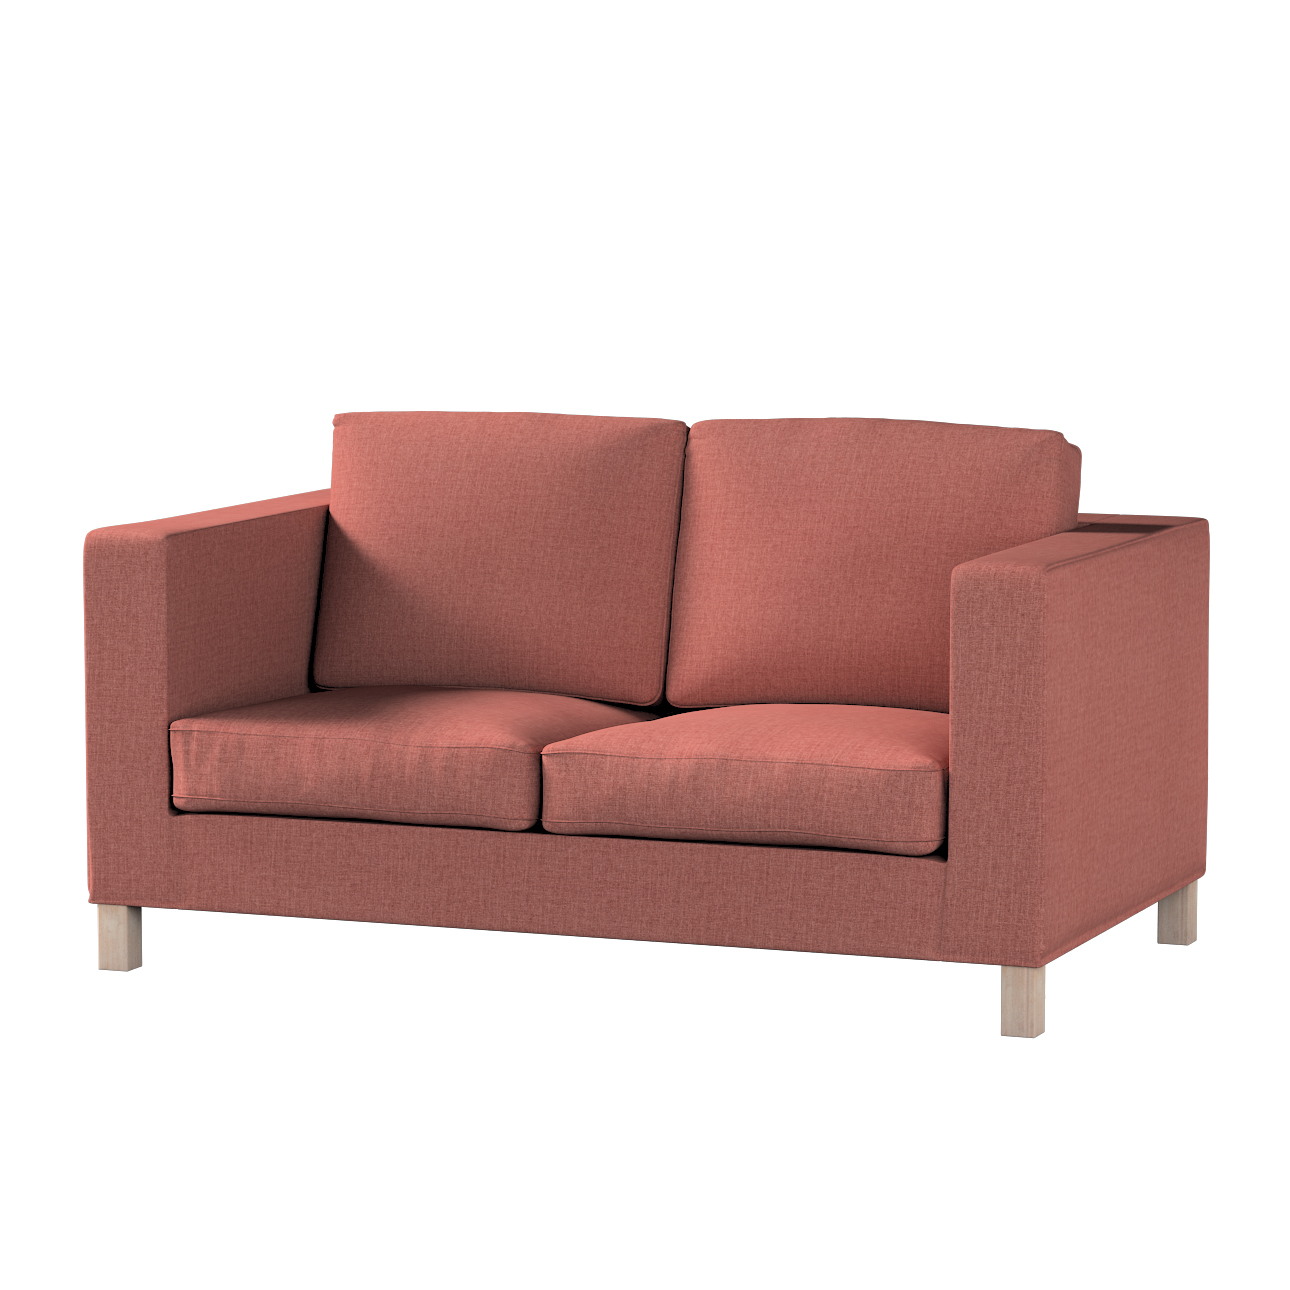 Bezug für Karlanda 2-Sitzer Sofa nicht ausklappbar, kurz, cognac braun, 60c günstig online kaufen